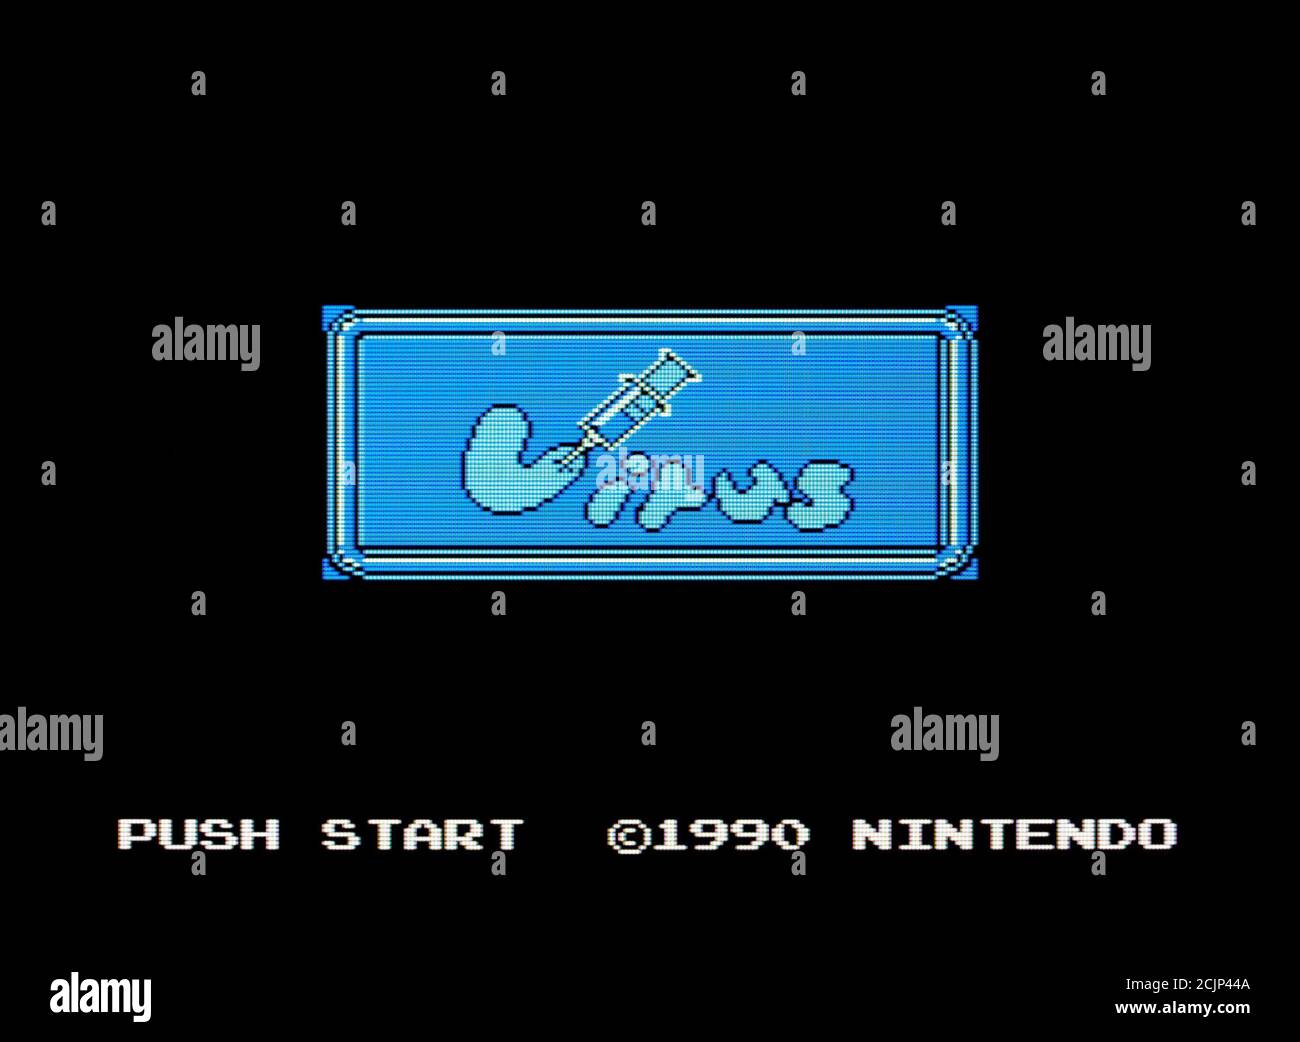 Virus - Nintendo Entertainment System - NES Videogioco - Editoriale utilizzare solo Foto Stock